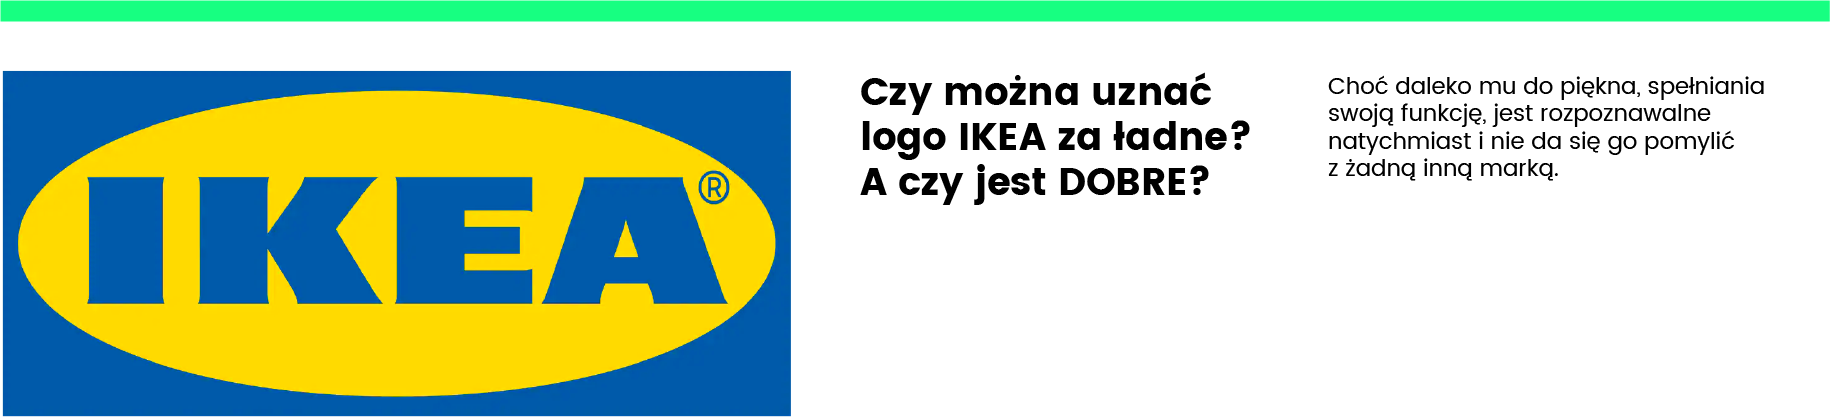 LOGO Ikea - jak zaprojektować dobre logo?